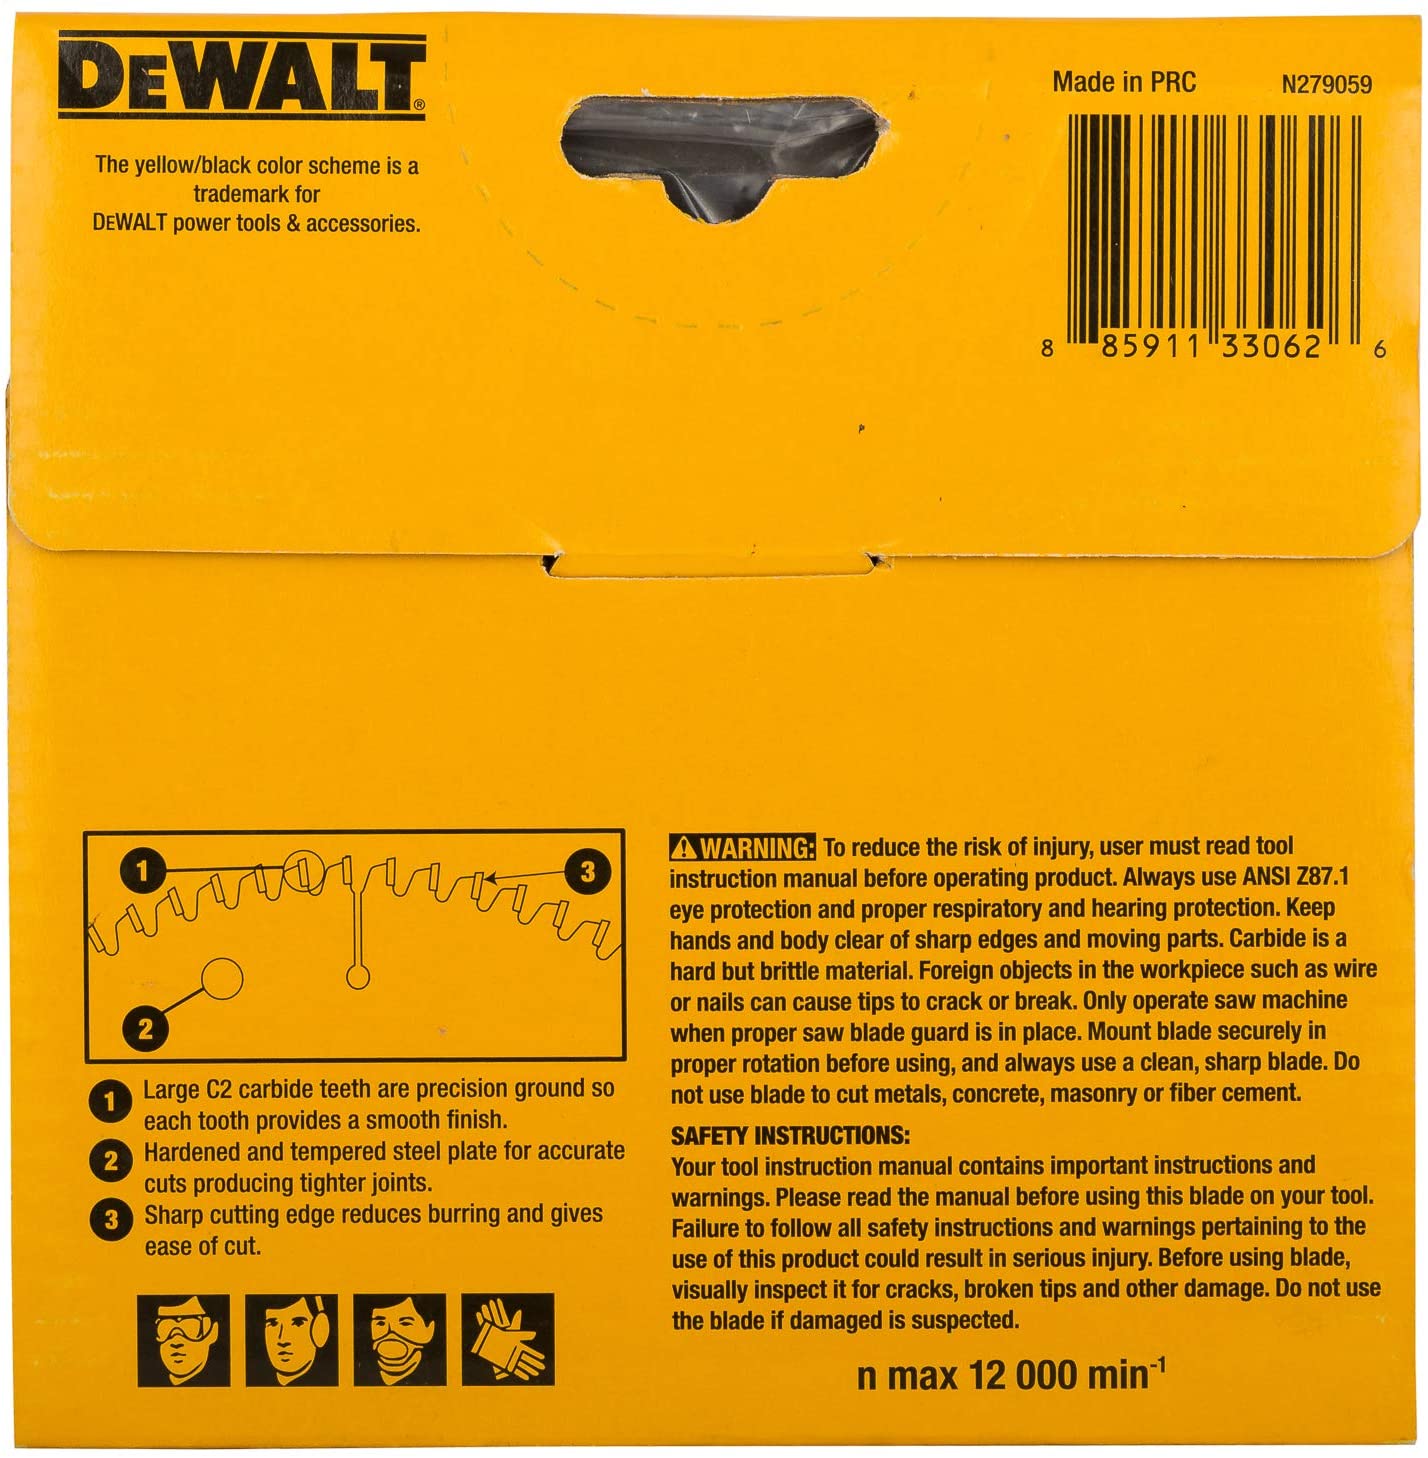 Dewalt DW03540 125mm 40T TCT Circular Saw Blade for cutting MDF,Plywood and Laminated Wood